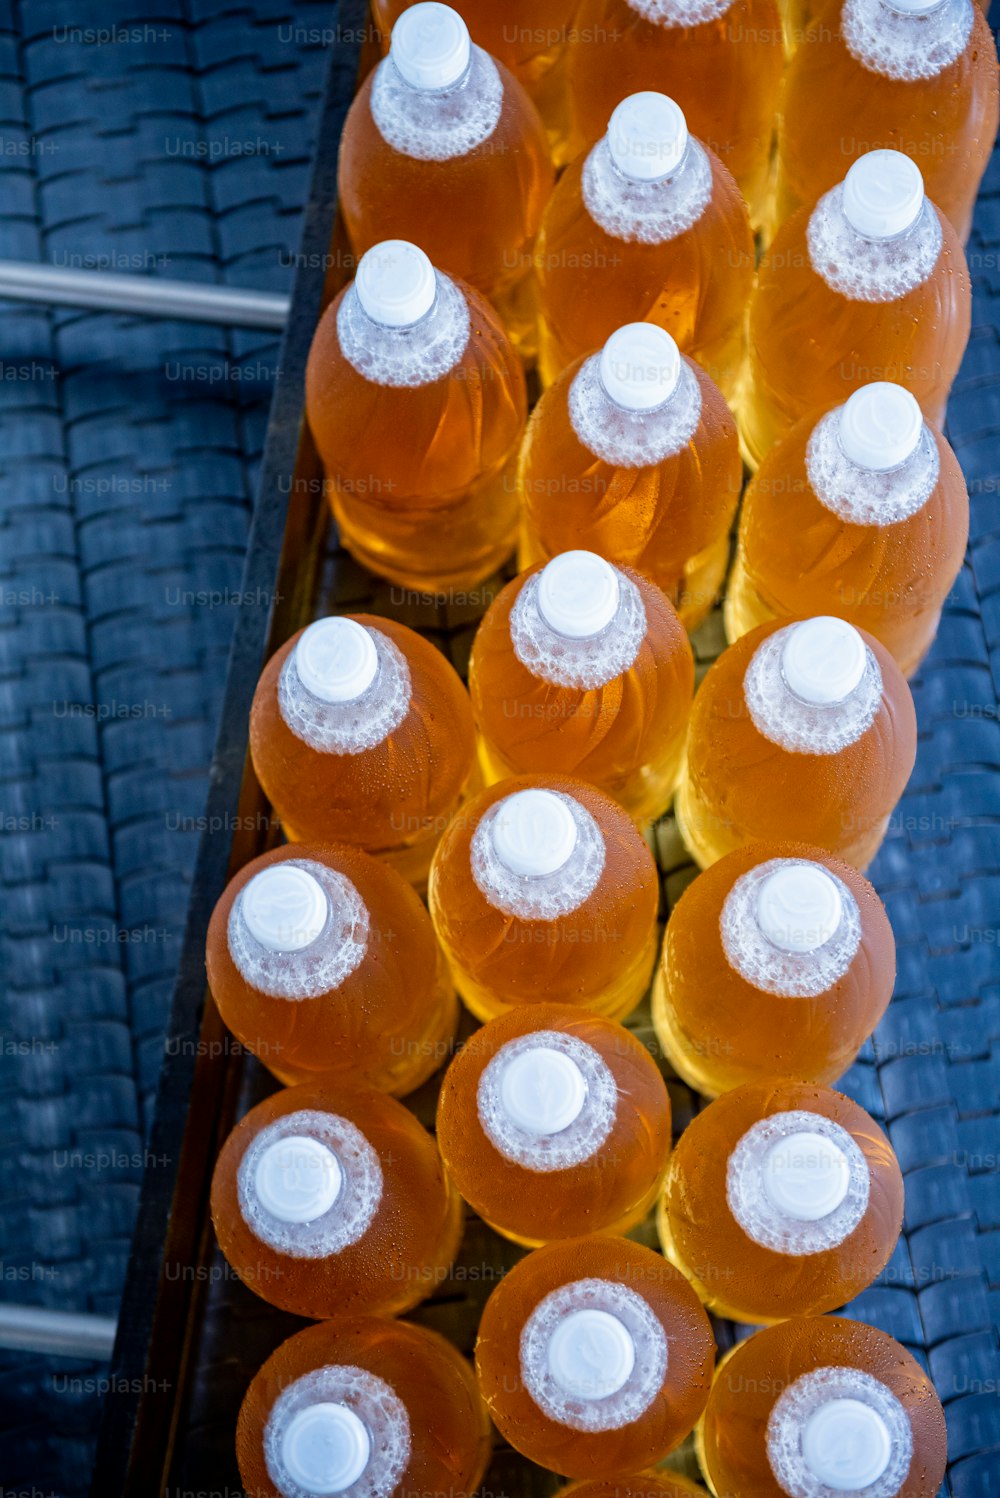 Bande transporteuse avec bouteilles pour jus ou eau dans une usine de boissons moderne.